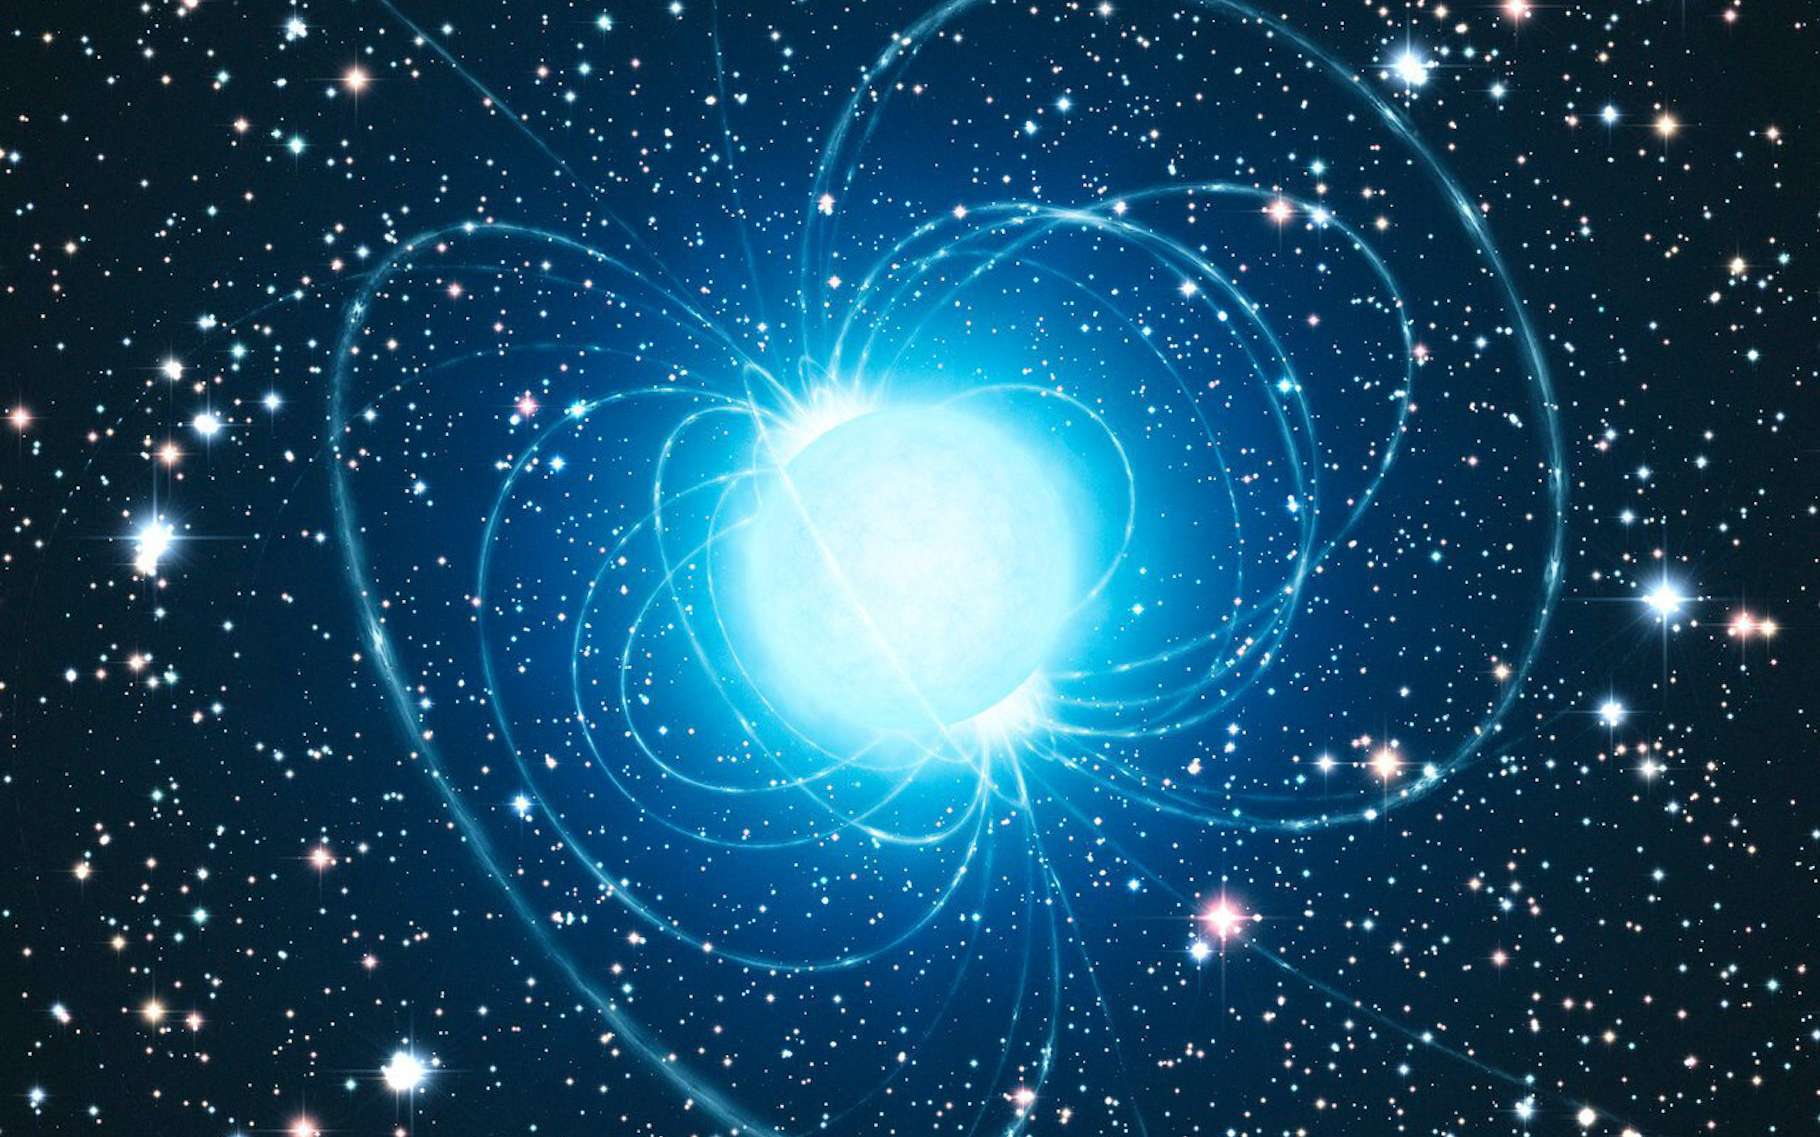 Des astronomes de l’observatoire d’Armagh (Irlande du Nord) et de l’université de Western Ontario (Canada) suggèrent que les naines blanches pourraient voir un champ magnétique apparaître autour d’elles durant leur phase de refroidissement. © L. Calcada, ESO